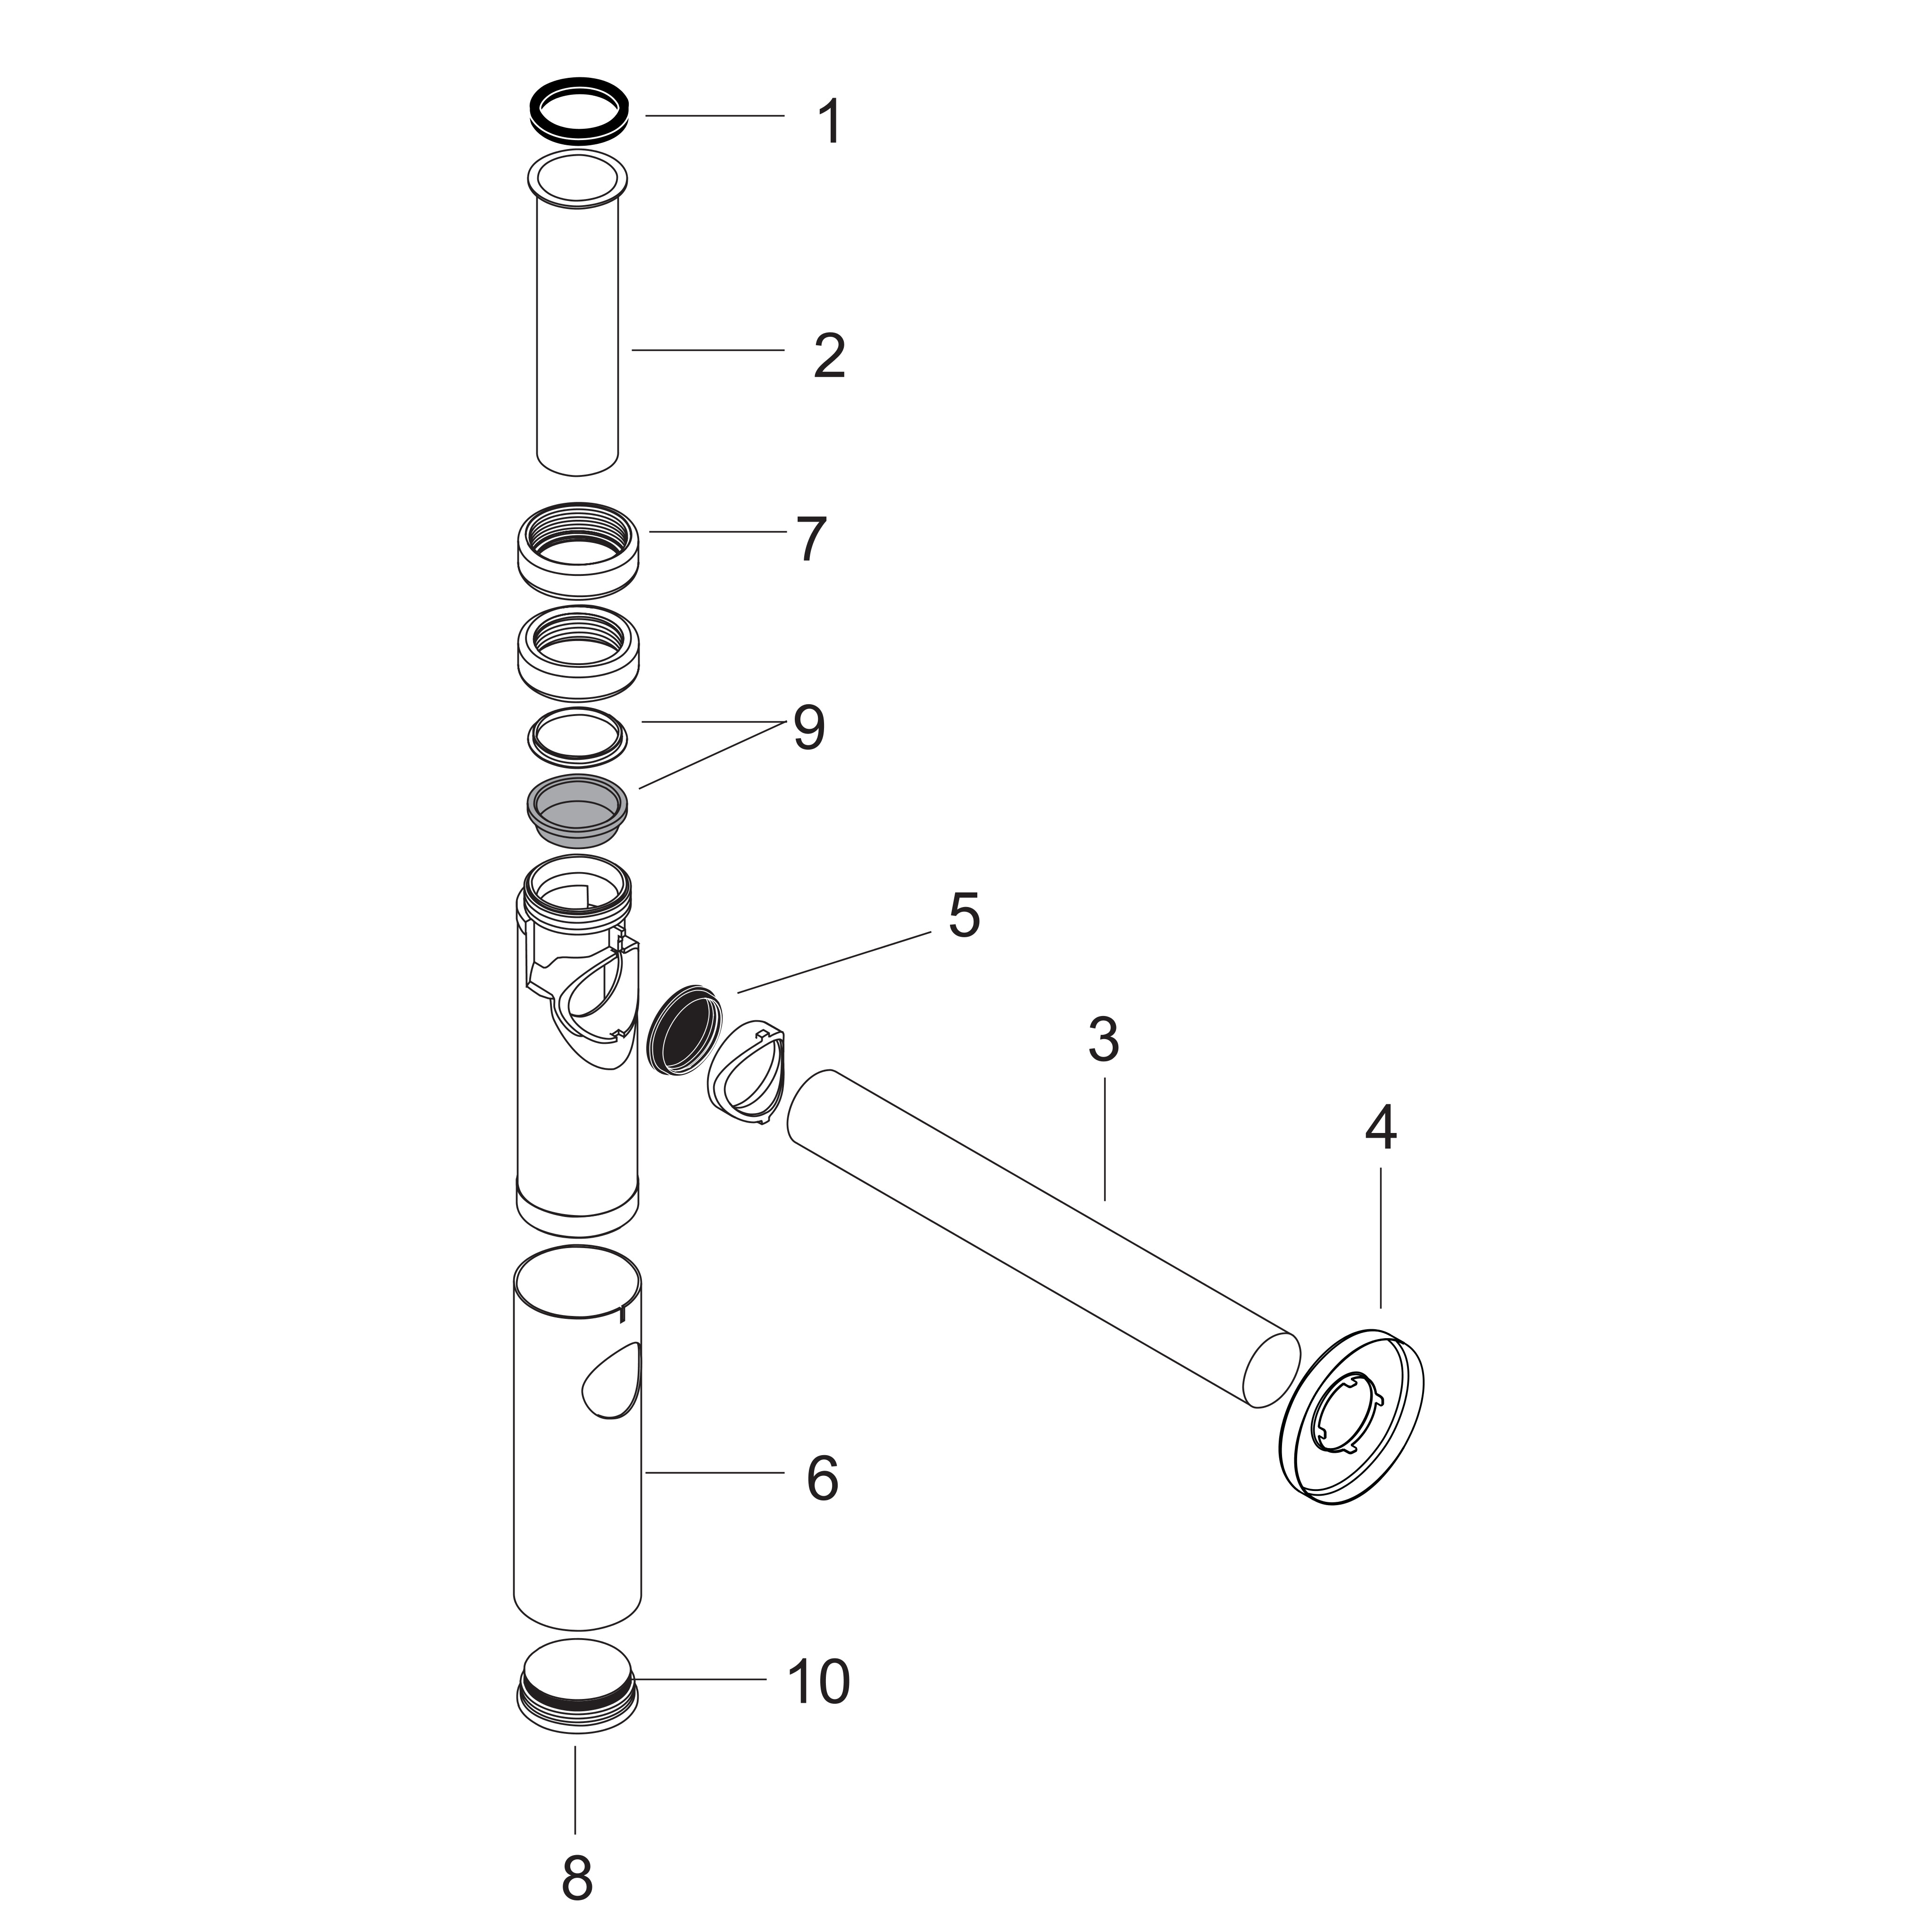 hansgrohe robinet d'arrêt: Robinet d'arrêt avec micro filter sortie G 3/8,  N° article 13904000